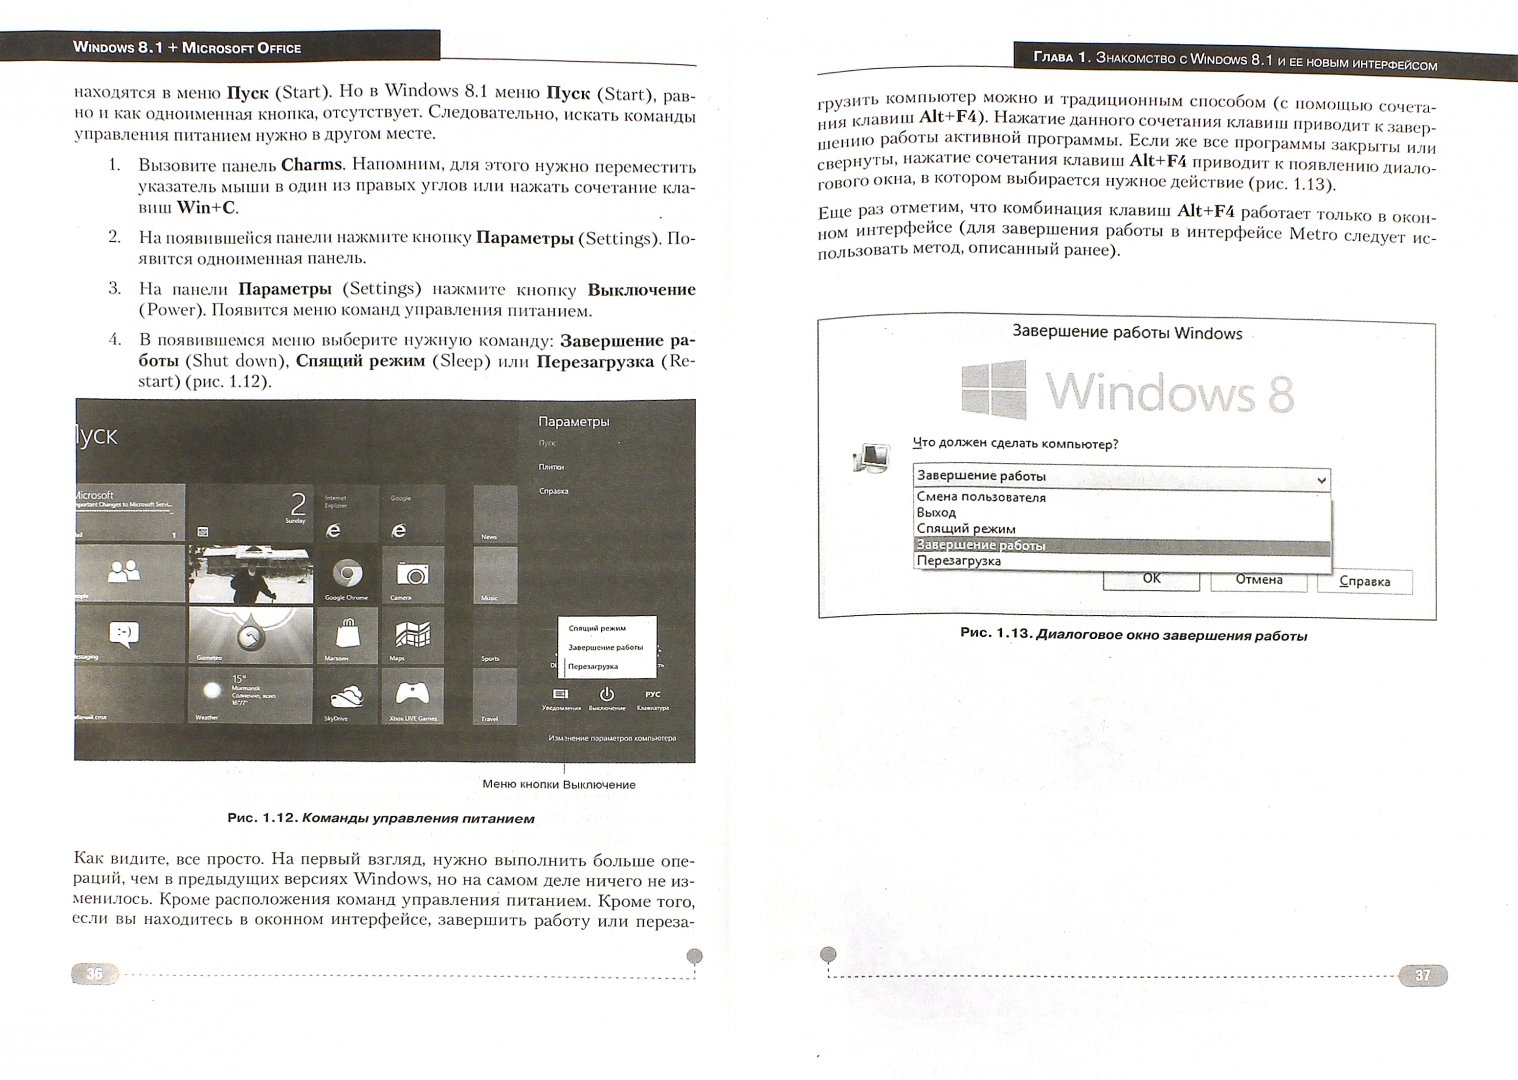 Иллюстрация 1 из 5 для Windows 8.1 + Office 2013. Практическое руководство по работе в новейшей системе (+DVD) - Прокди, Вишневский, Матвеев | Лабиринт - книги. Источник: Лабиринт